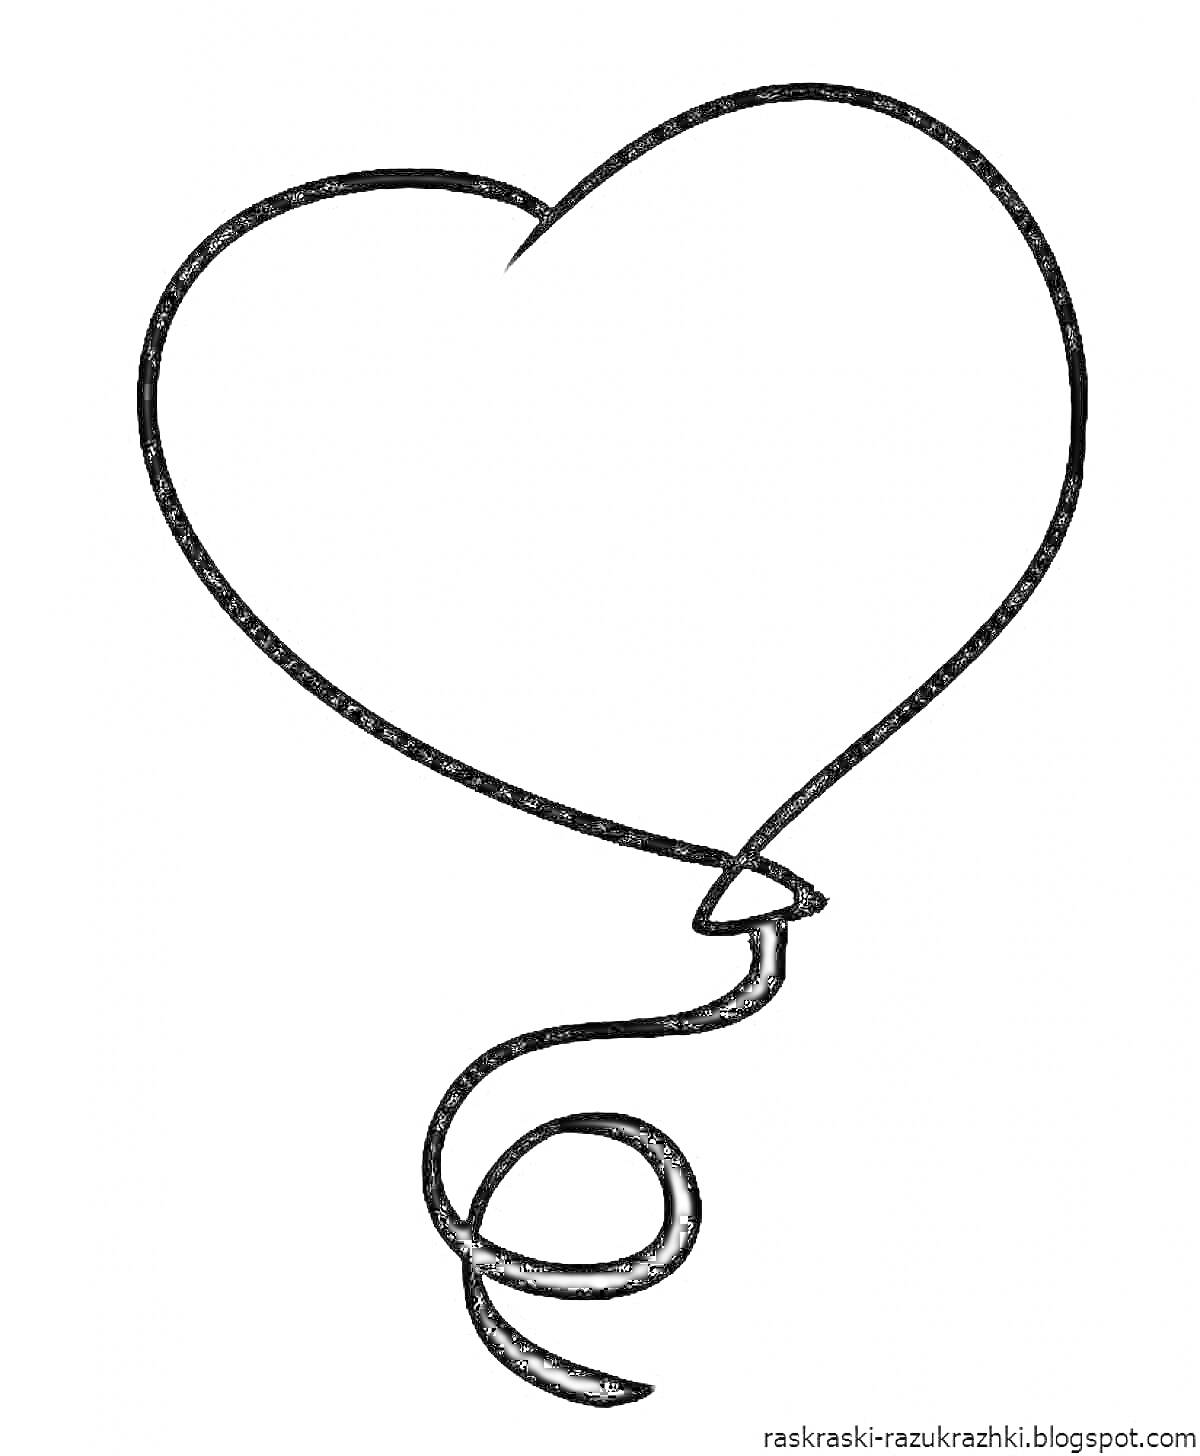 Раскраска Шарик в форме сердца с заостренной нижней частью и закрученным шнуром